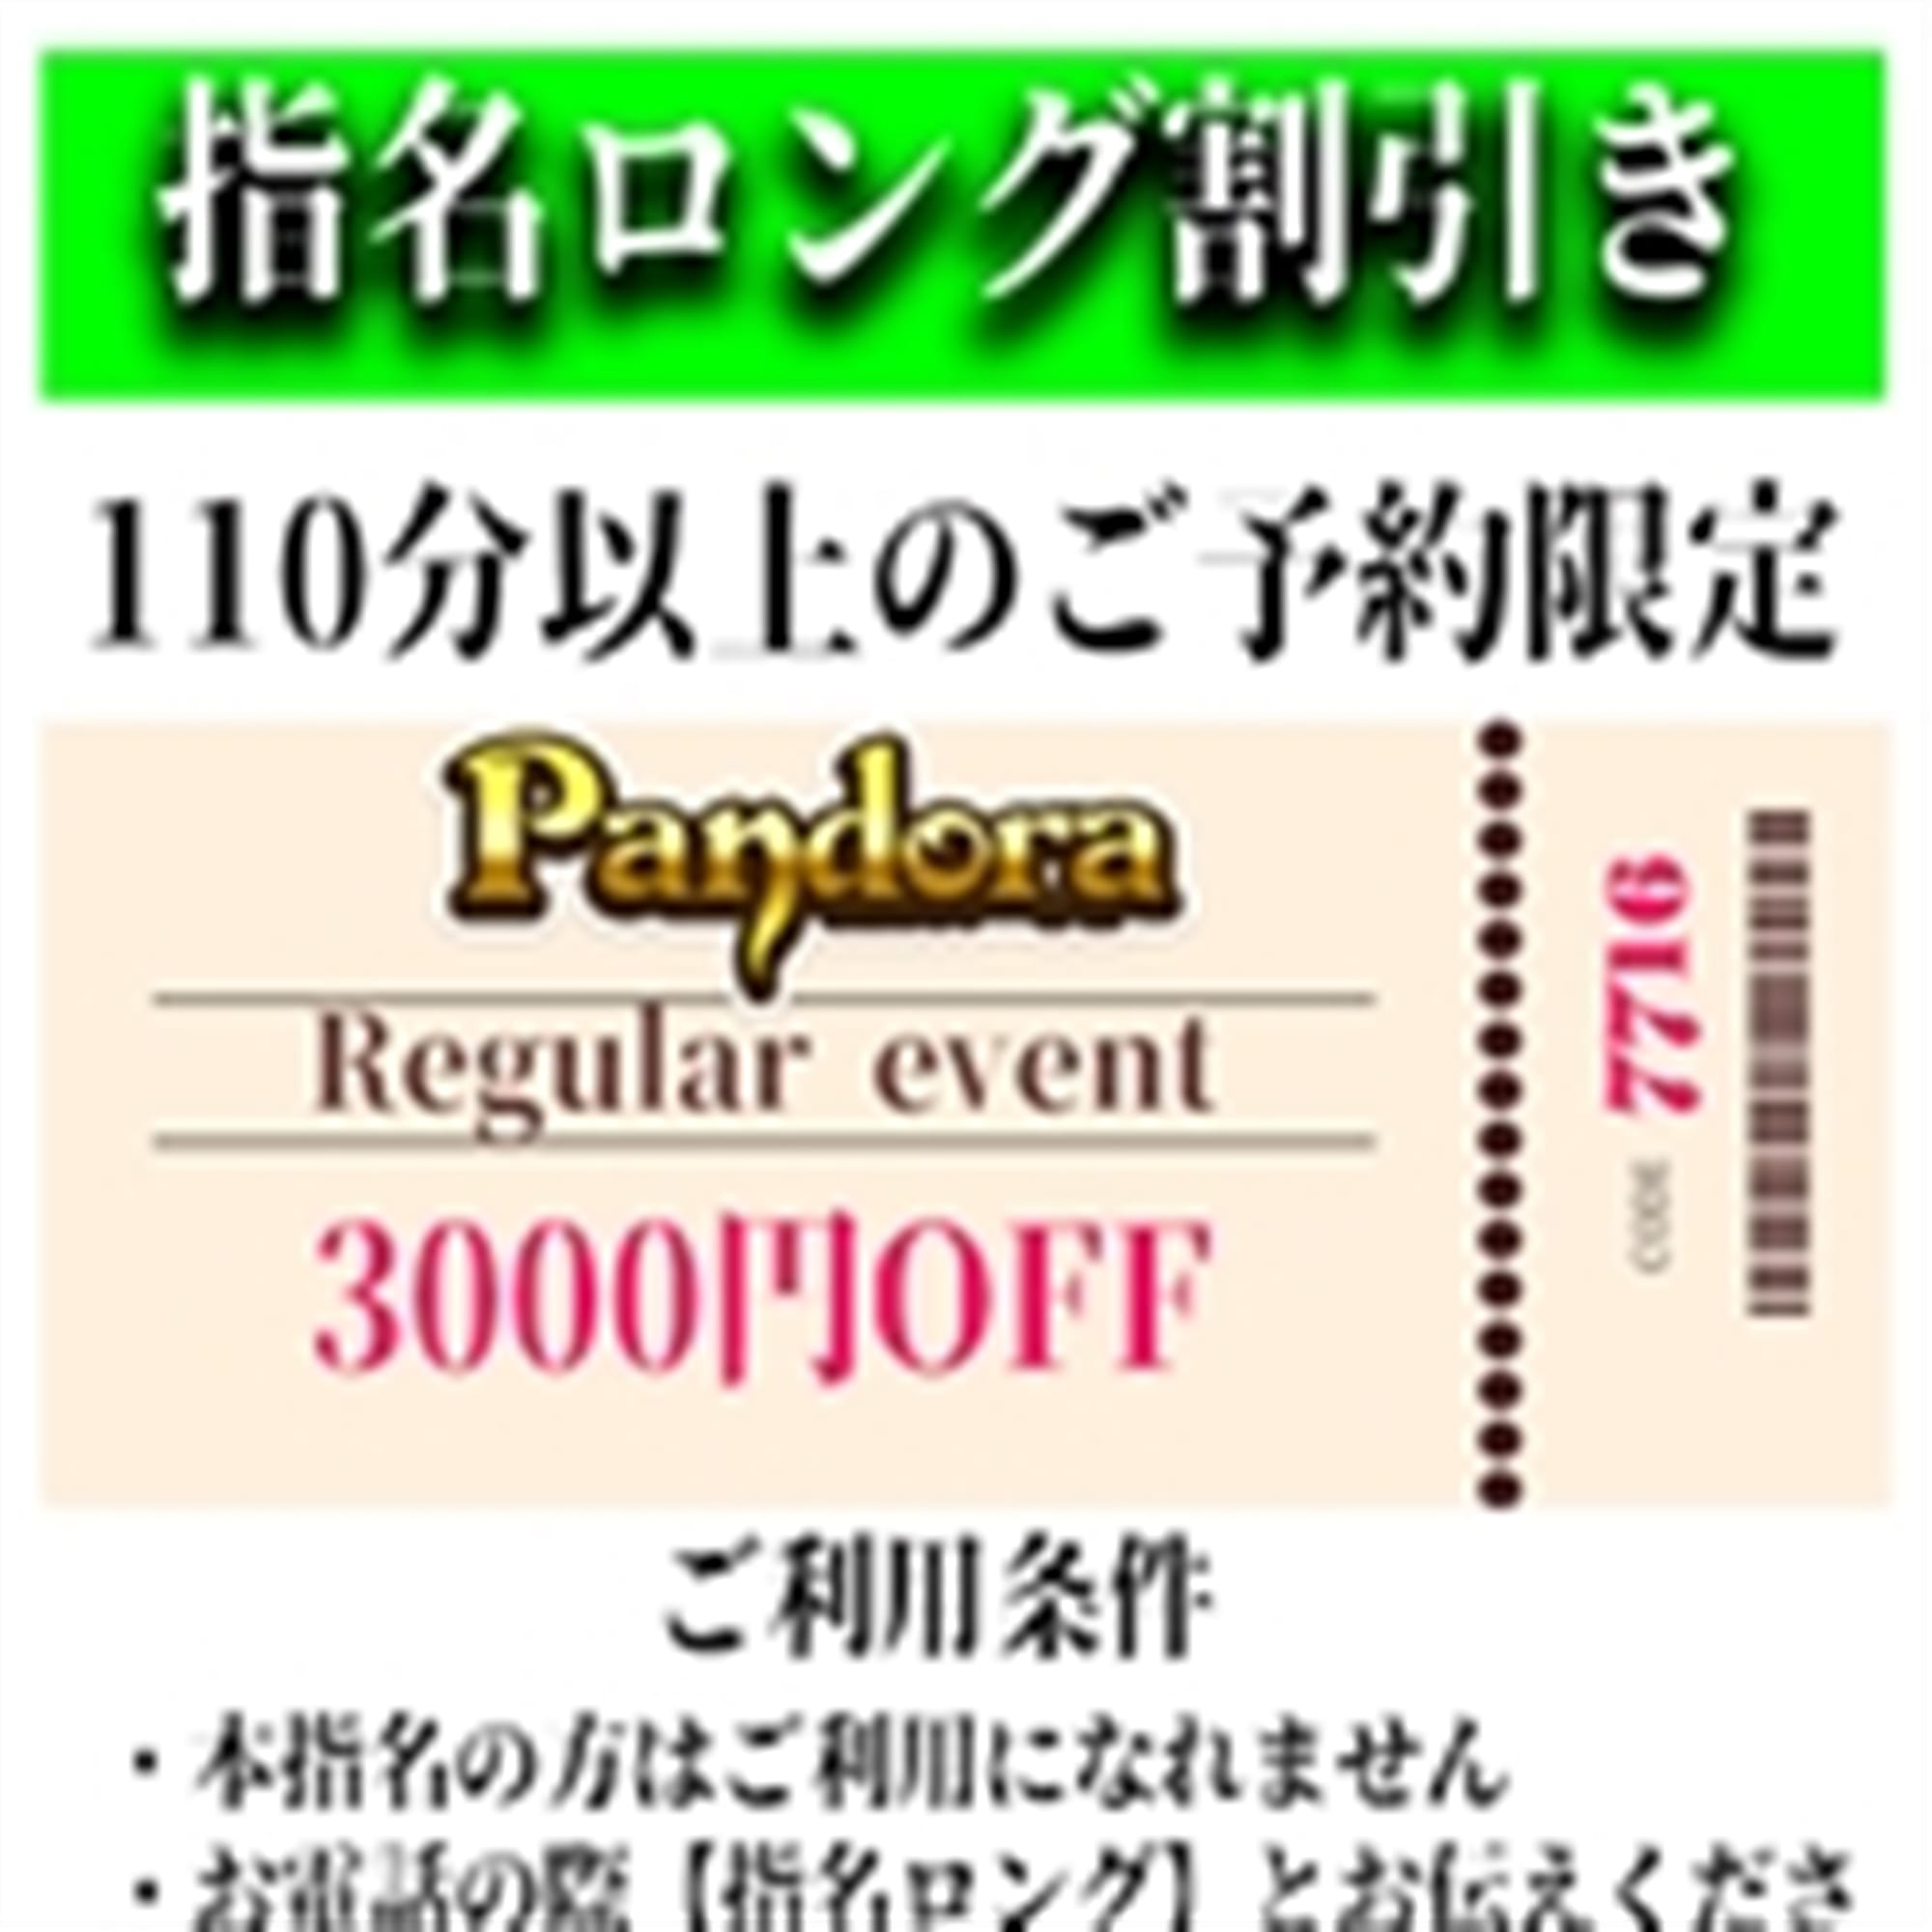 「ご指名のお客様も遊べるロングコース割引」04/27(土) 00:43 | Pandora(パンドラ)新潟のお得なニュース